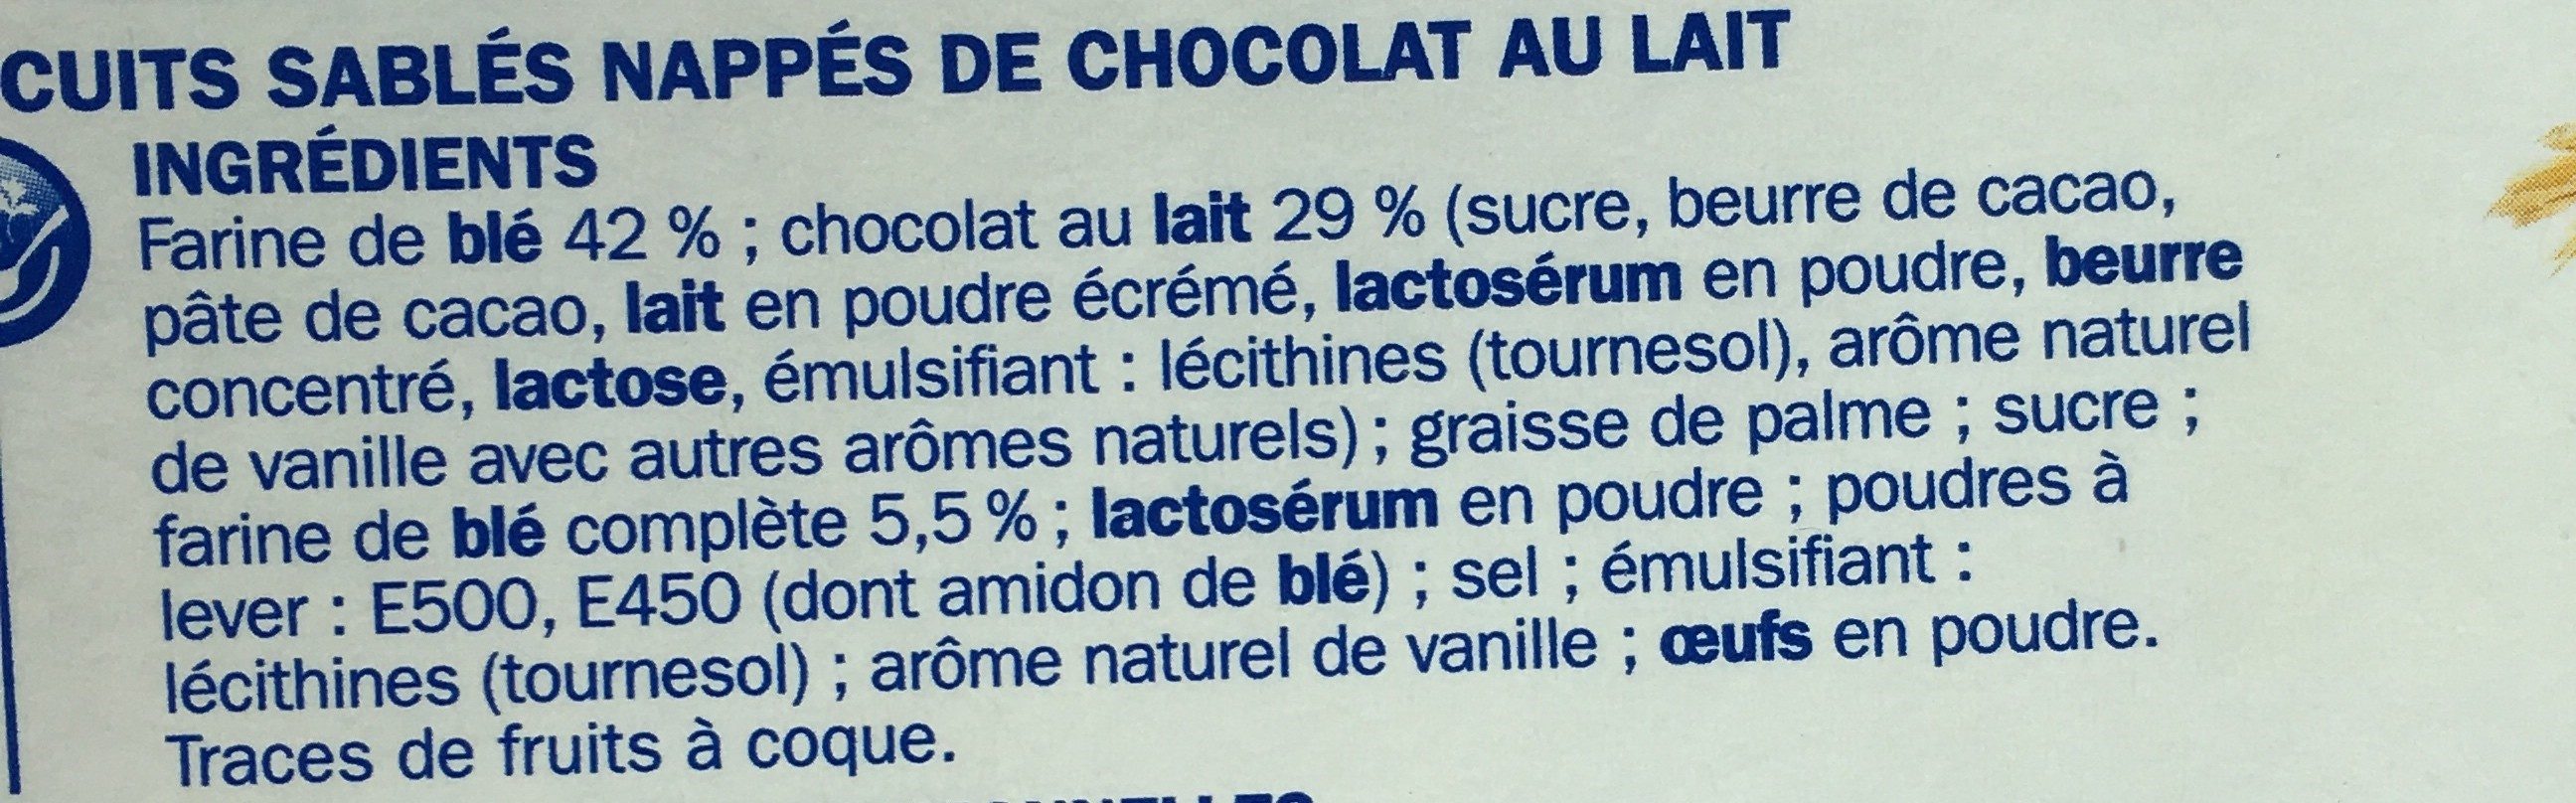 Sablé céréales P'tit Déli Chocolat au lait pocket - Ingrédients